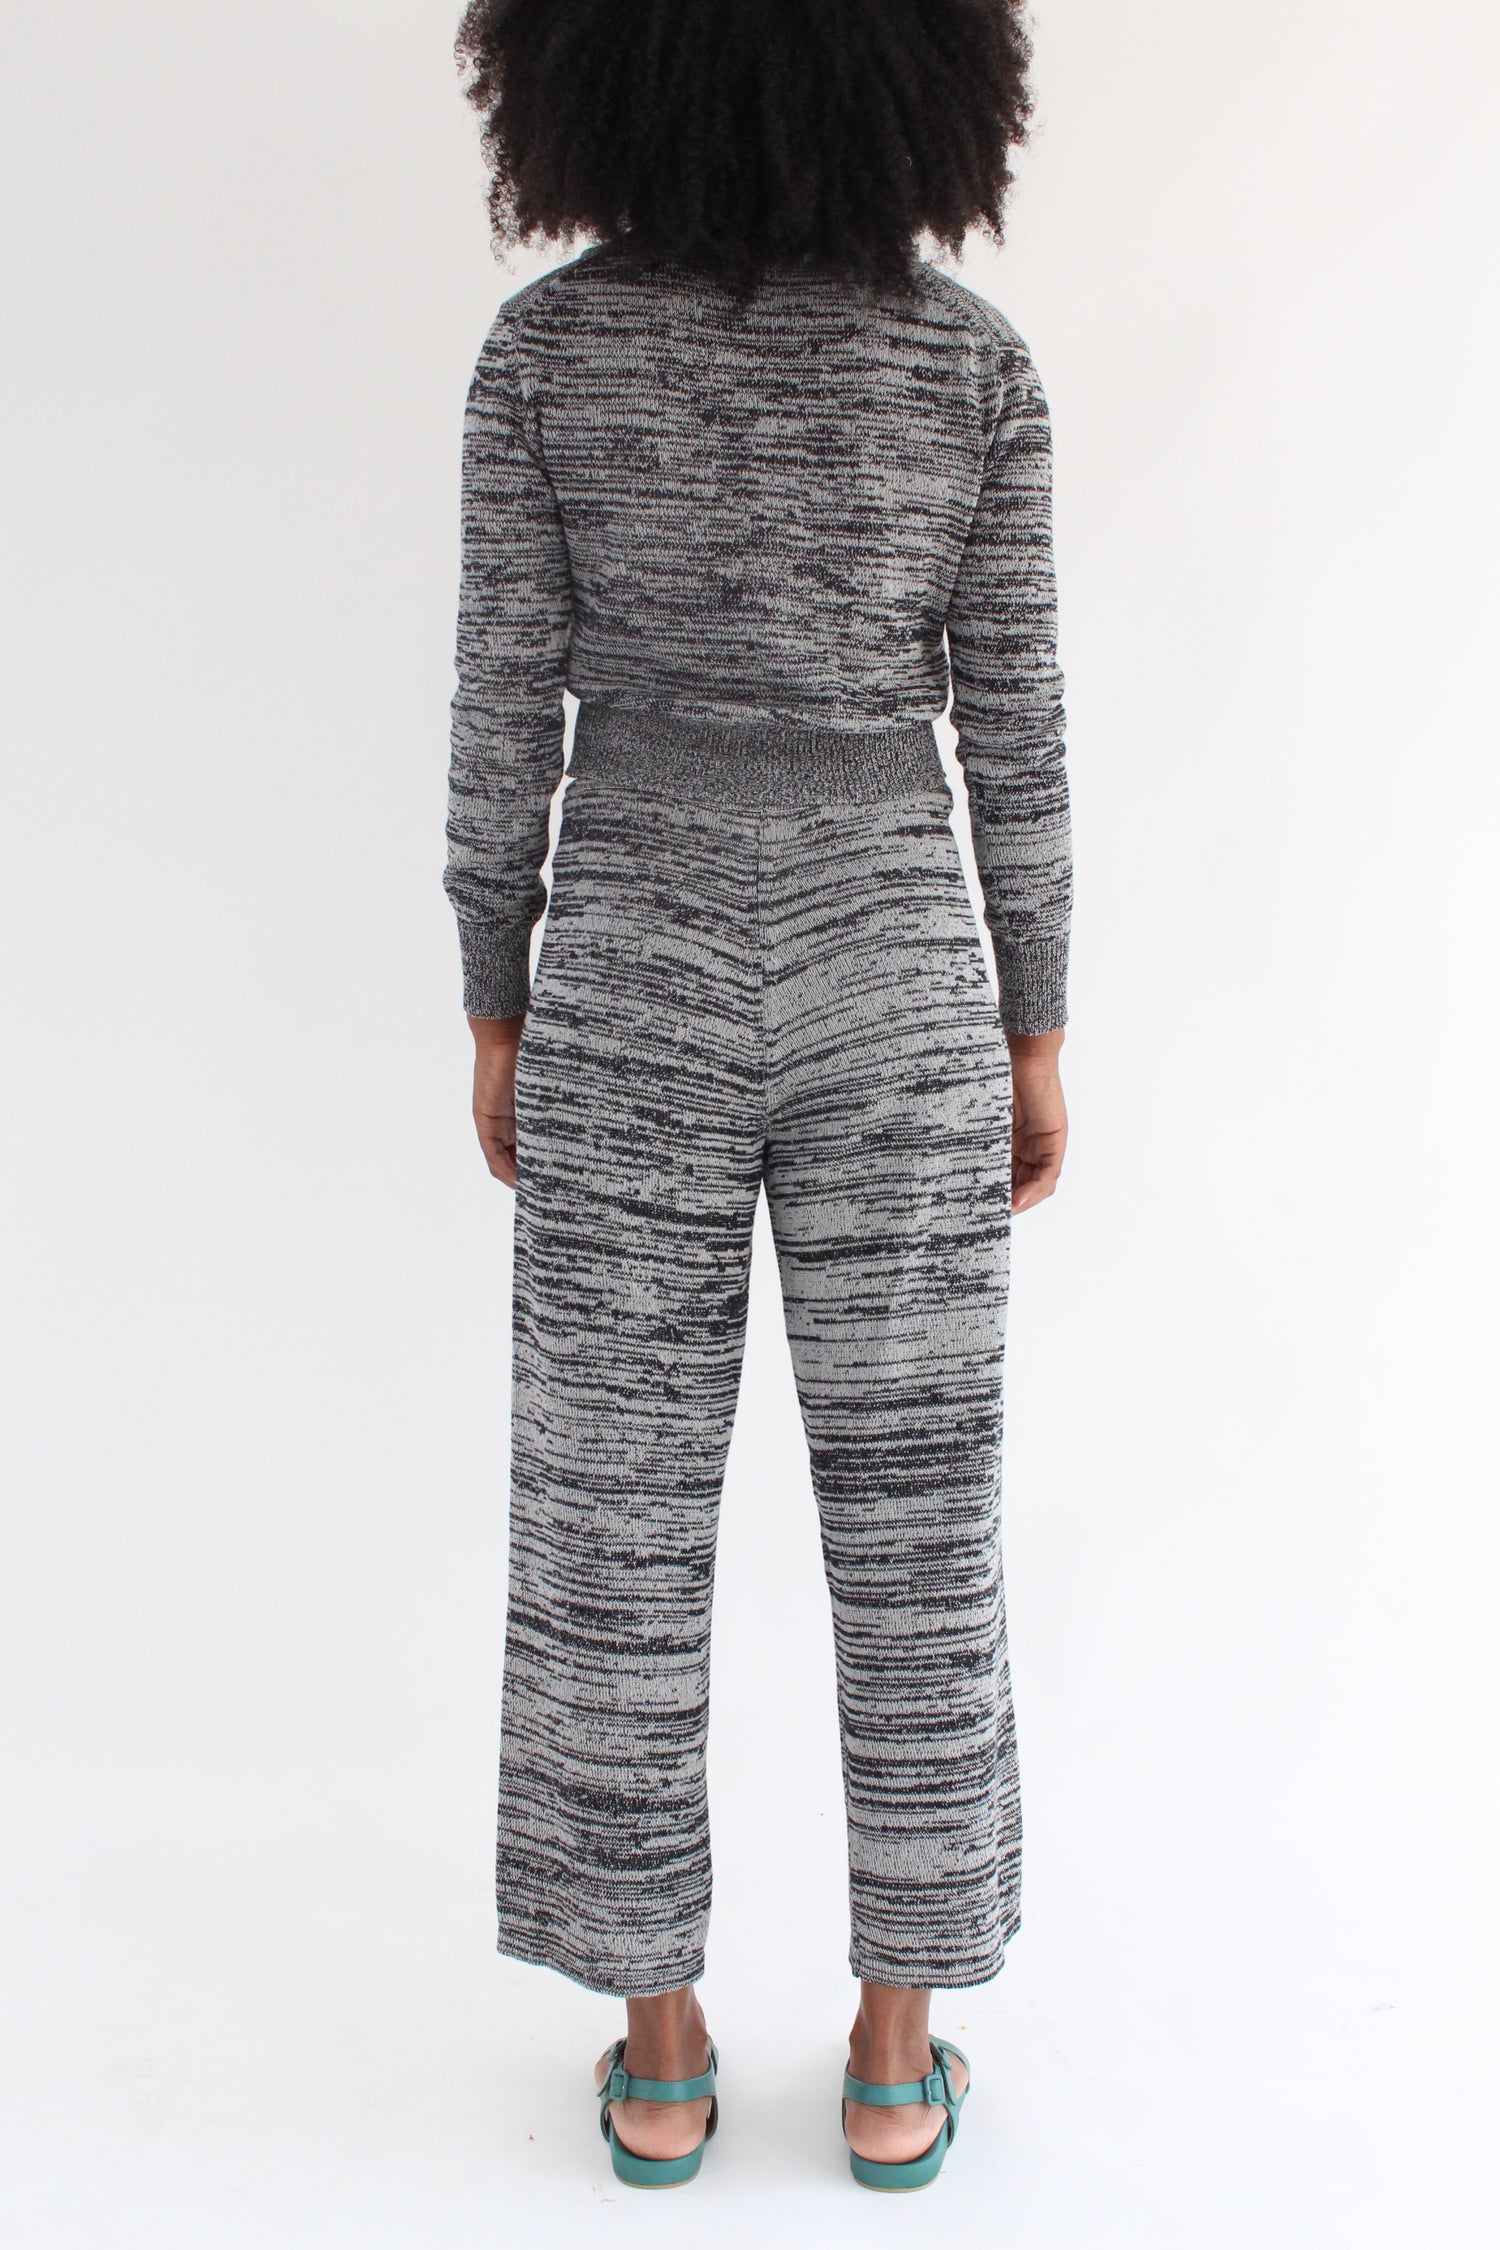 Beklina Cotton Knit Trouser Black/Grey